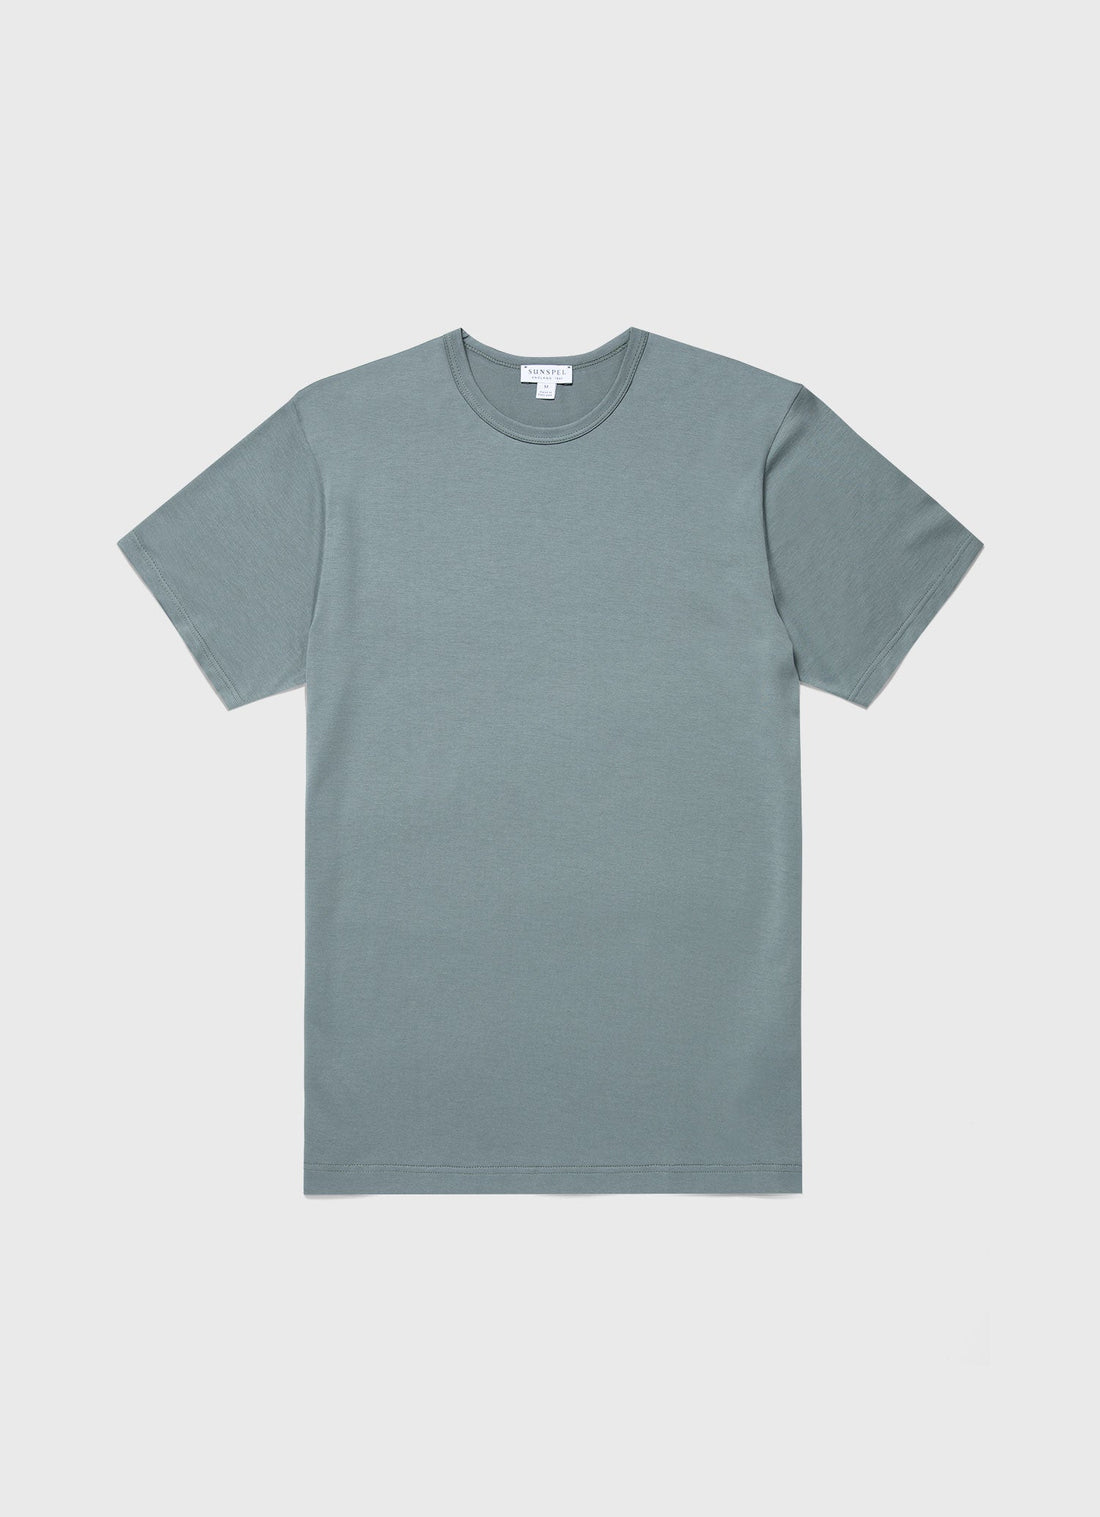 Men's Classic T-shirt in Smoke Green